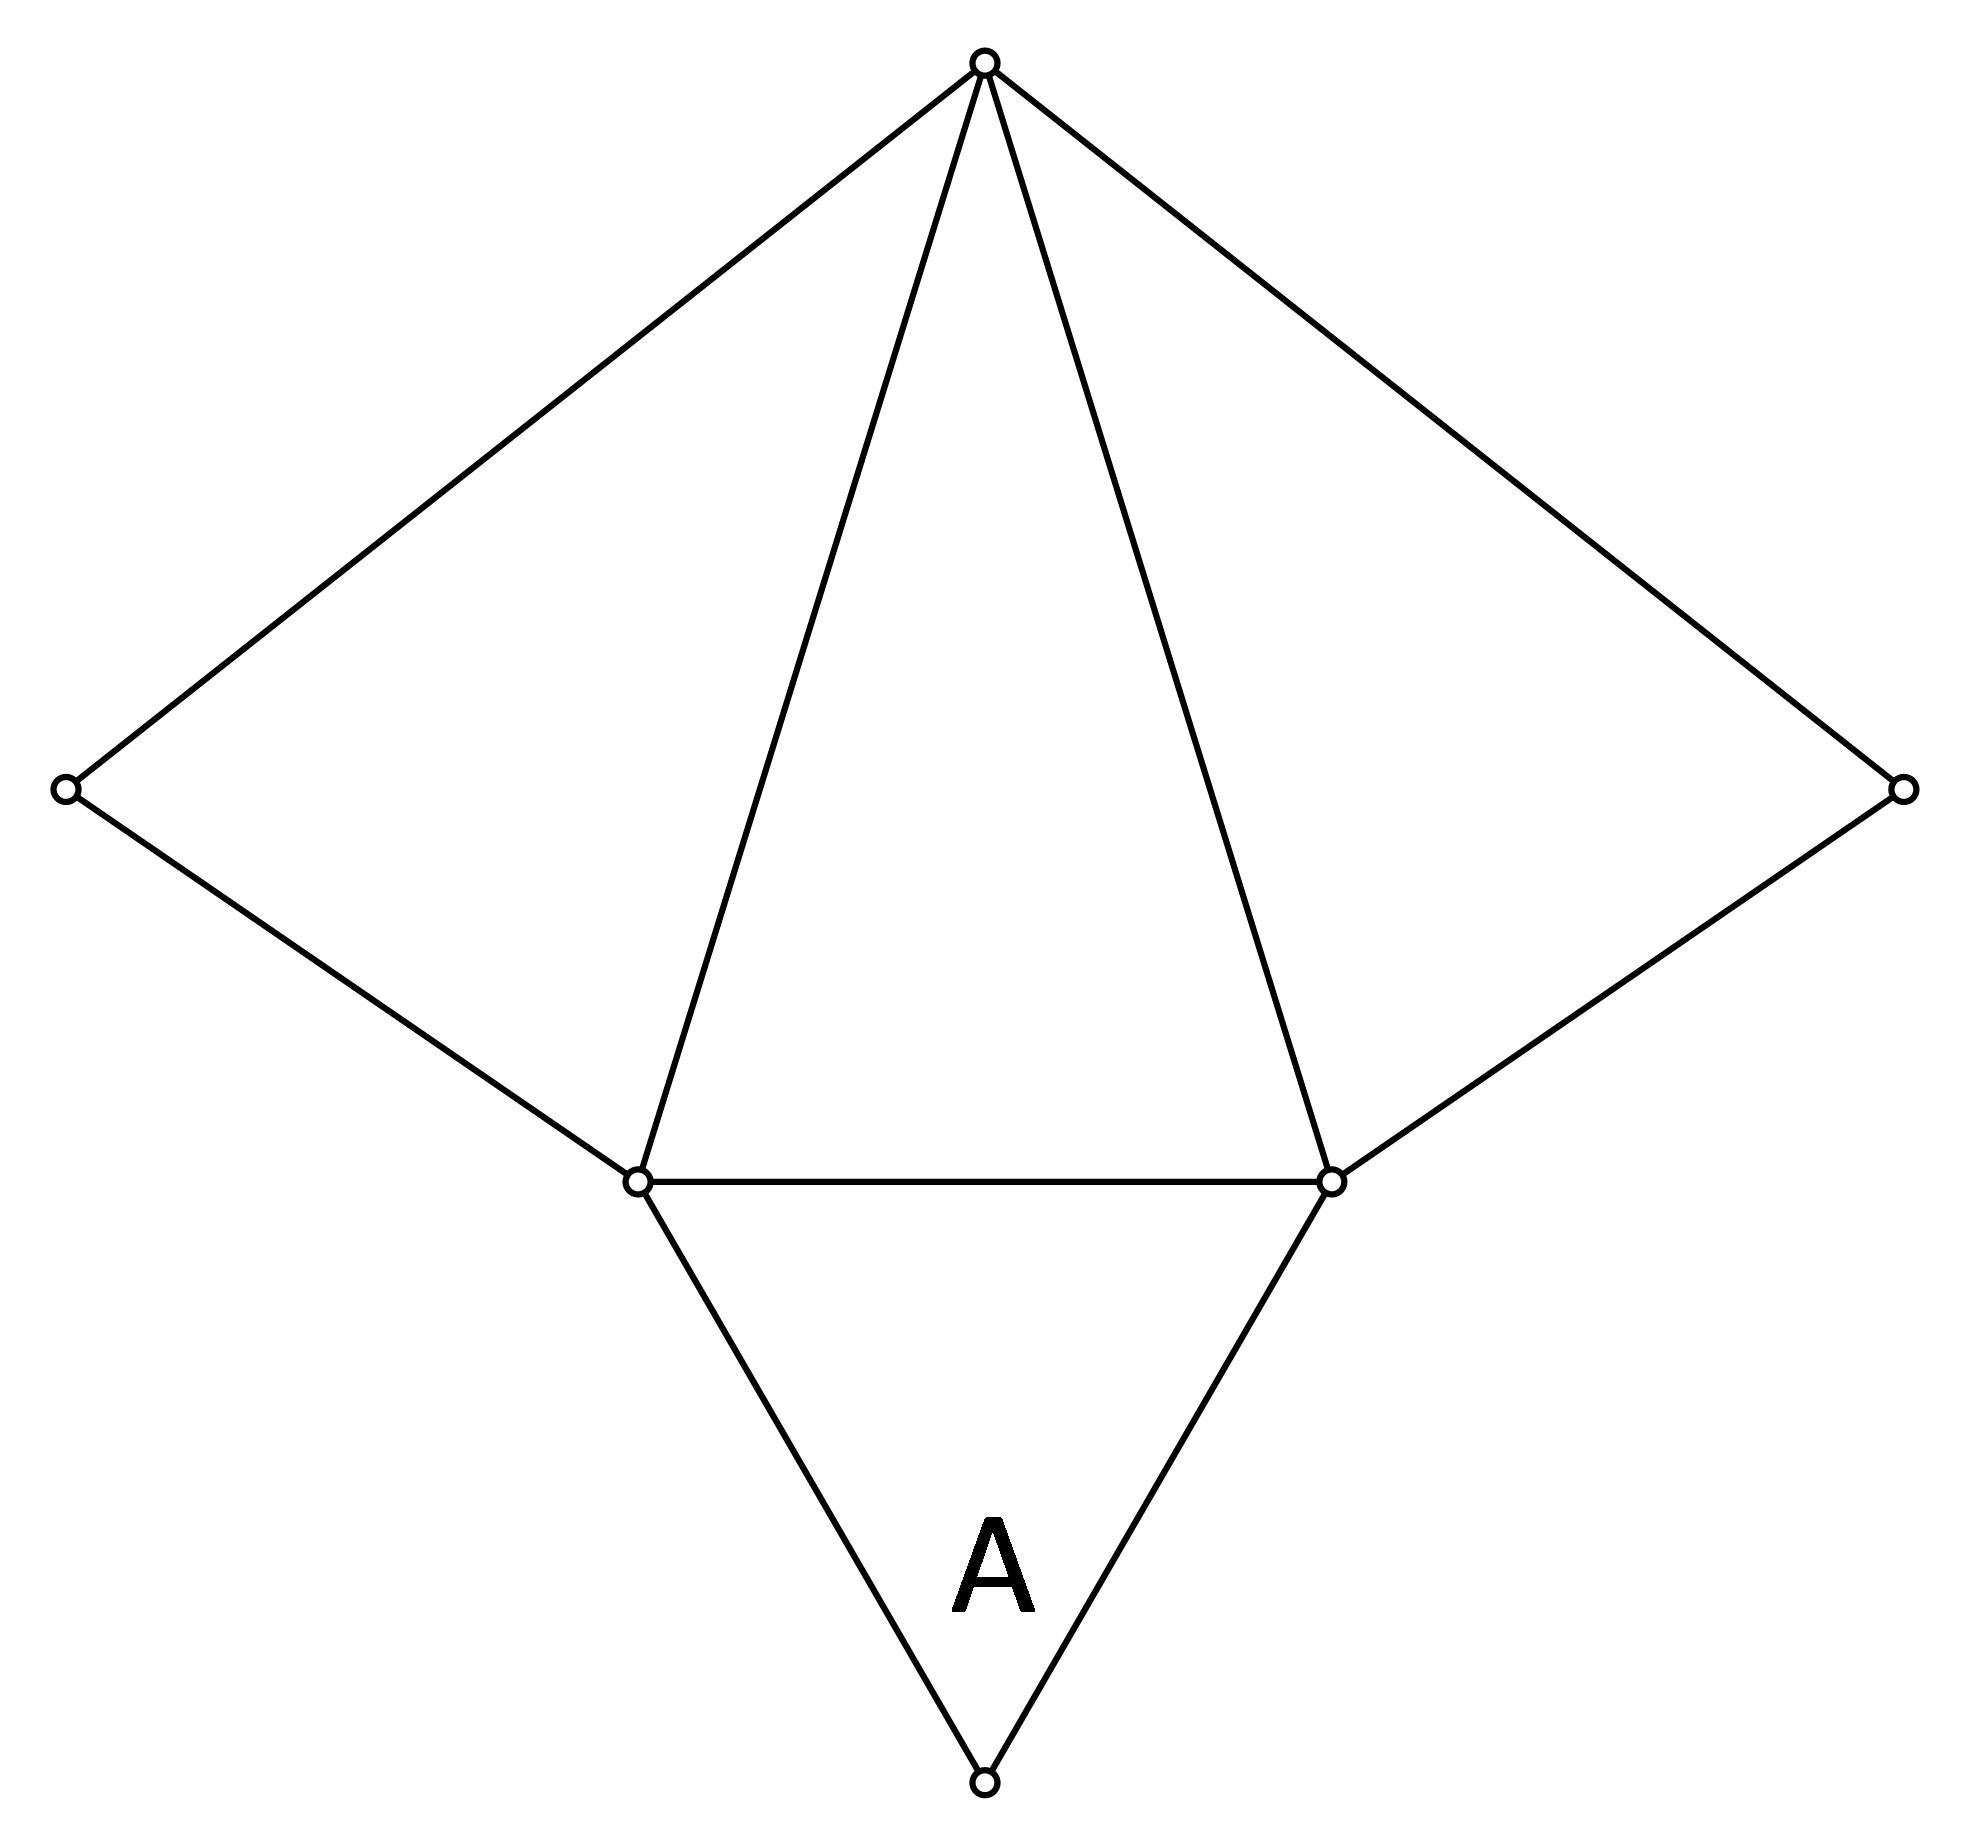 Slika moguće mreže pravilne trostrane piramide.